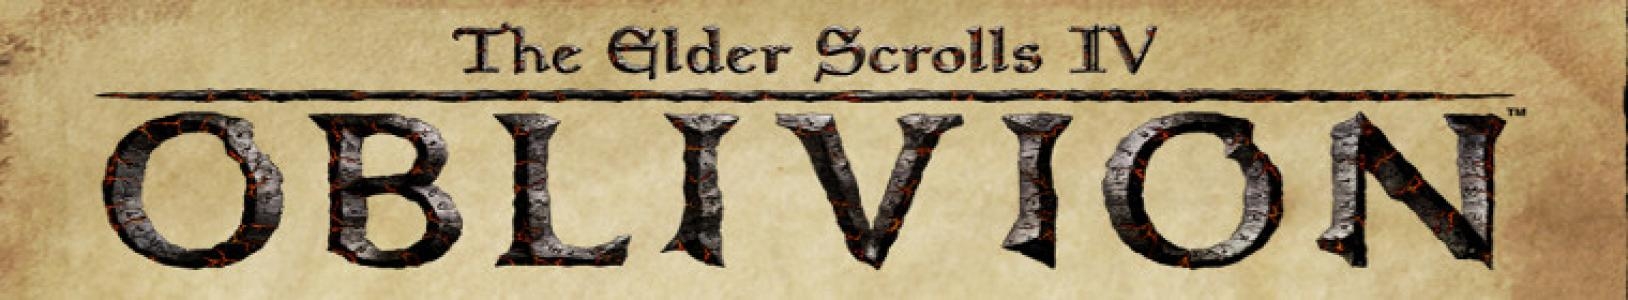 The Elder Scrolls IV: Oblivion banner